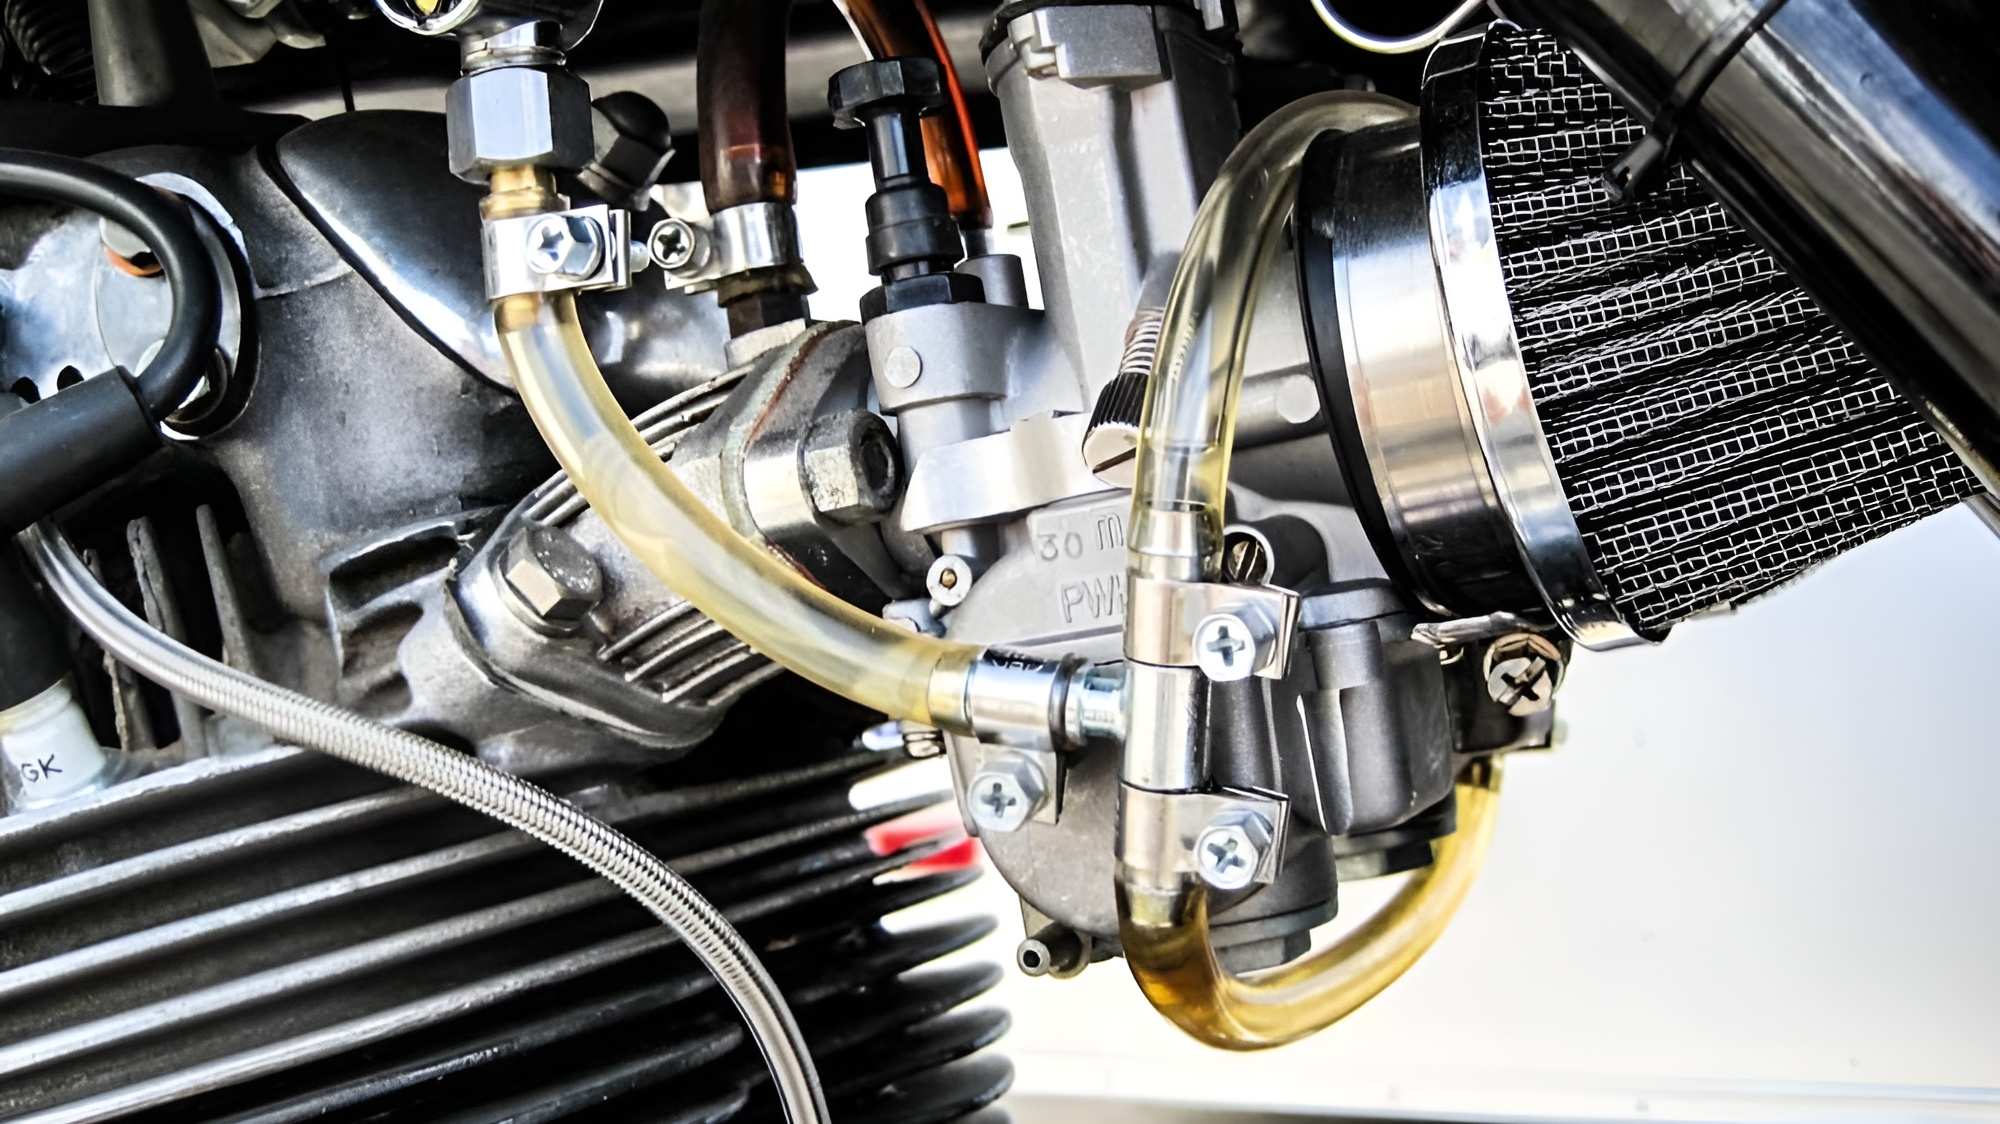 Vấn đề ở bộ chế hòa khí và hệ thống nạp khí trên xe máy thường là nguyên do dẫn tới sự số không chạy rà ở xe máy